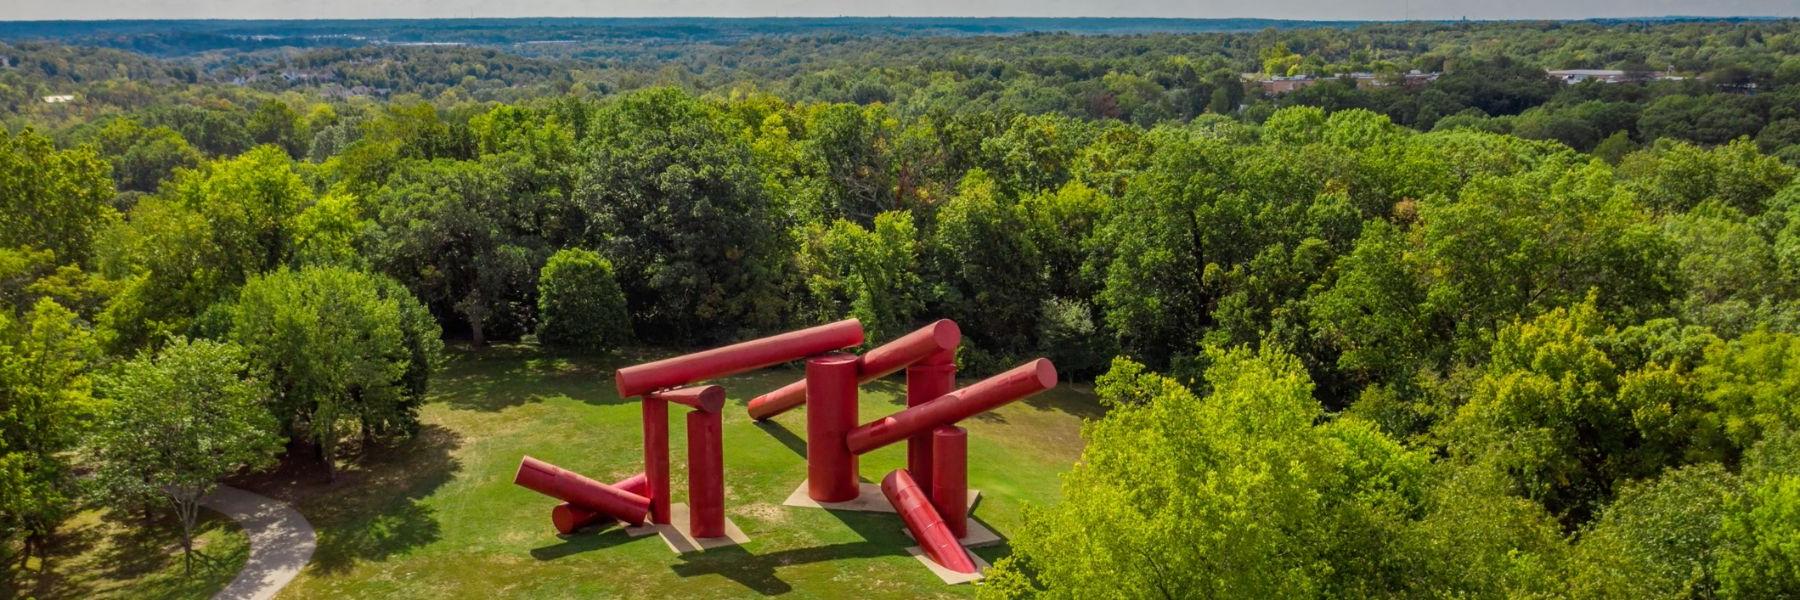 Laumeier雕塑公园的户外雕塑《The Way》以巨大的红色圆柱体为特色.